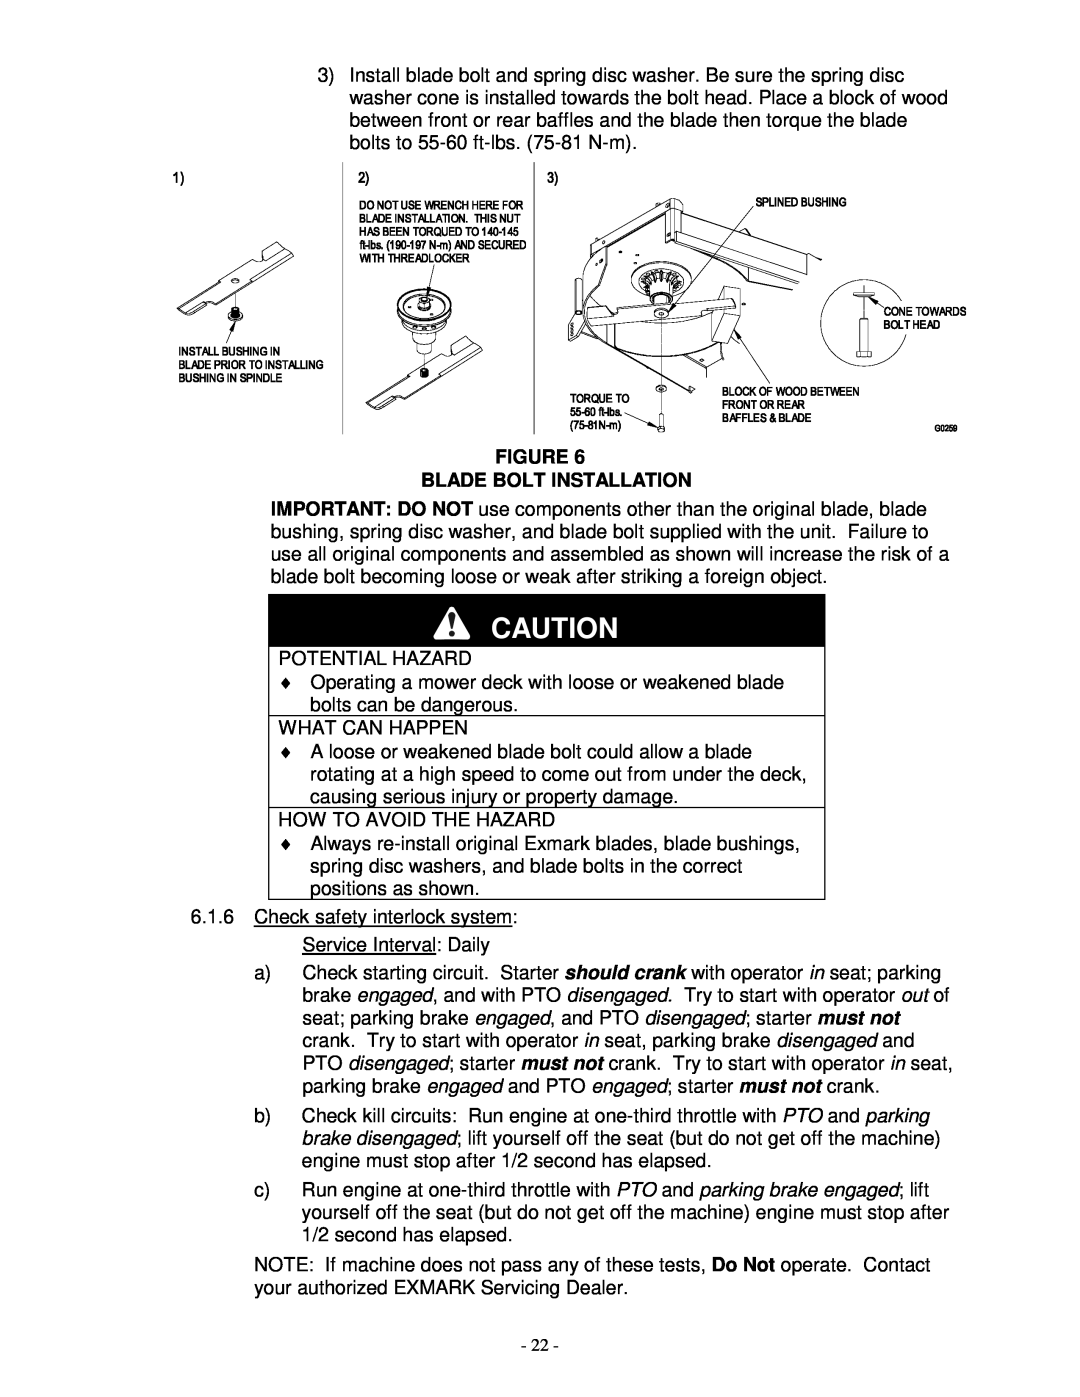 Exmark TR23KC manual Figure Blade Bolt Installation, Potential Hazard 